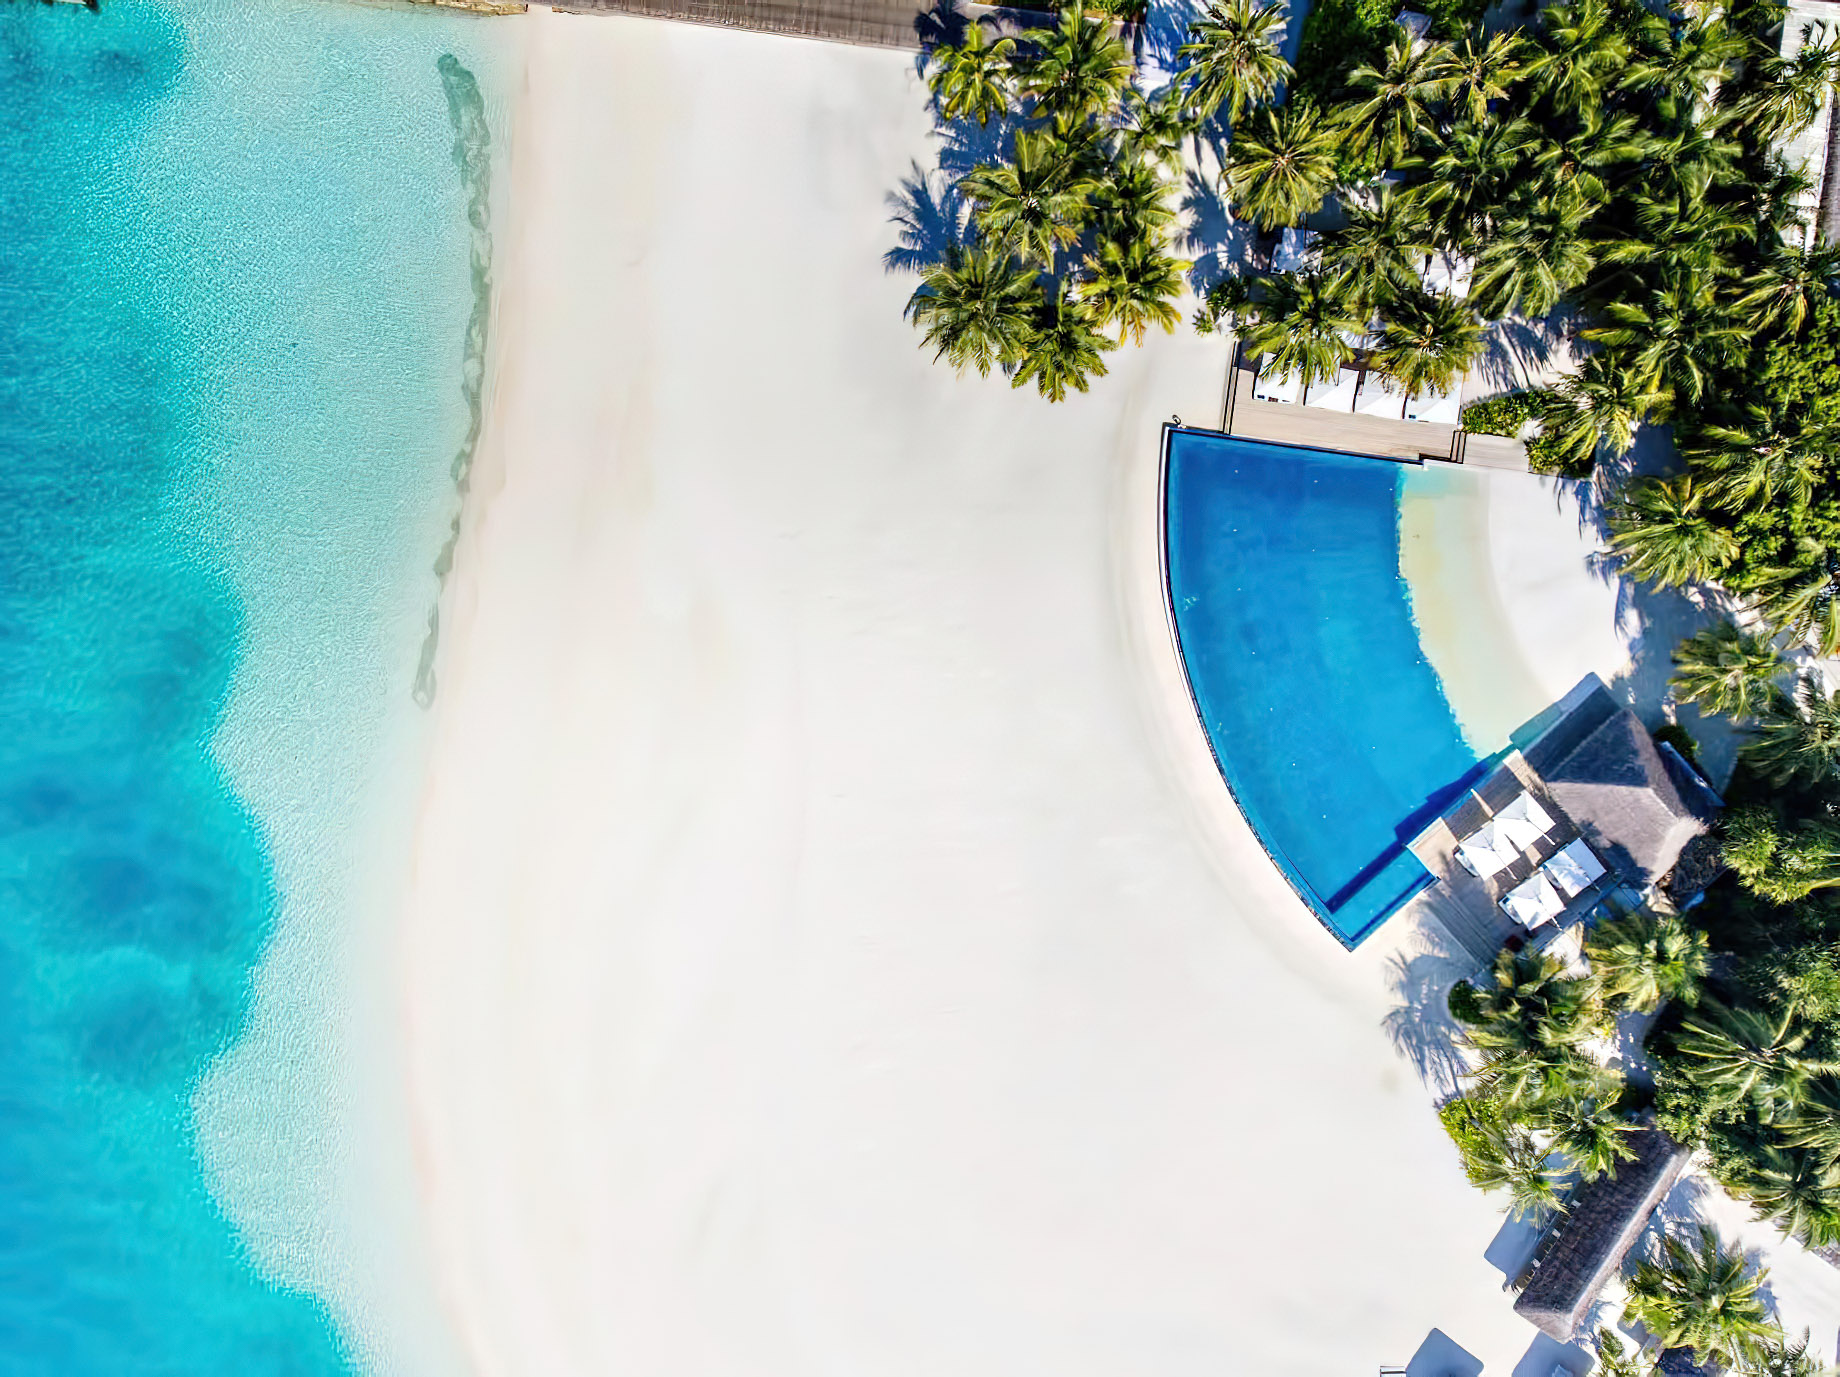 Velassaru Maldives Resort – South Male Atoll, Maldives - Infinity Pool